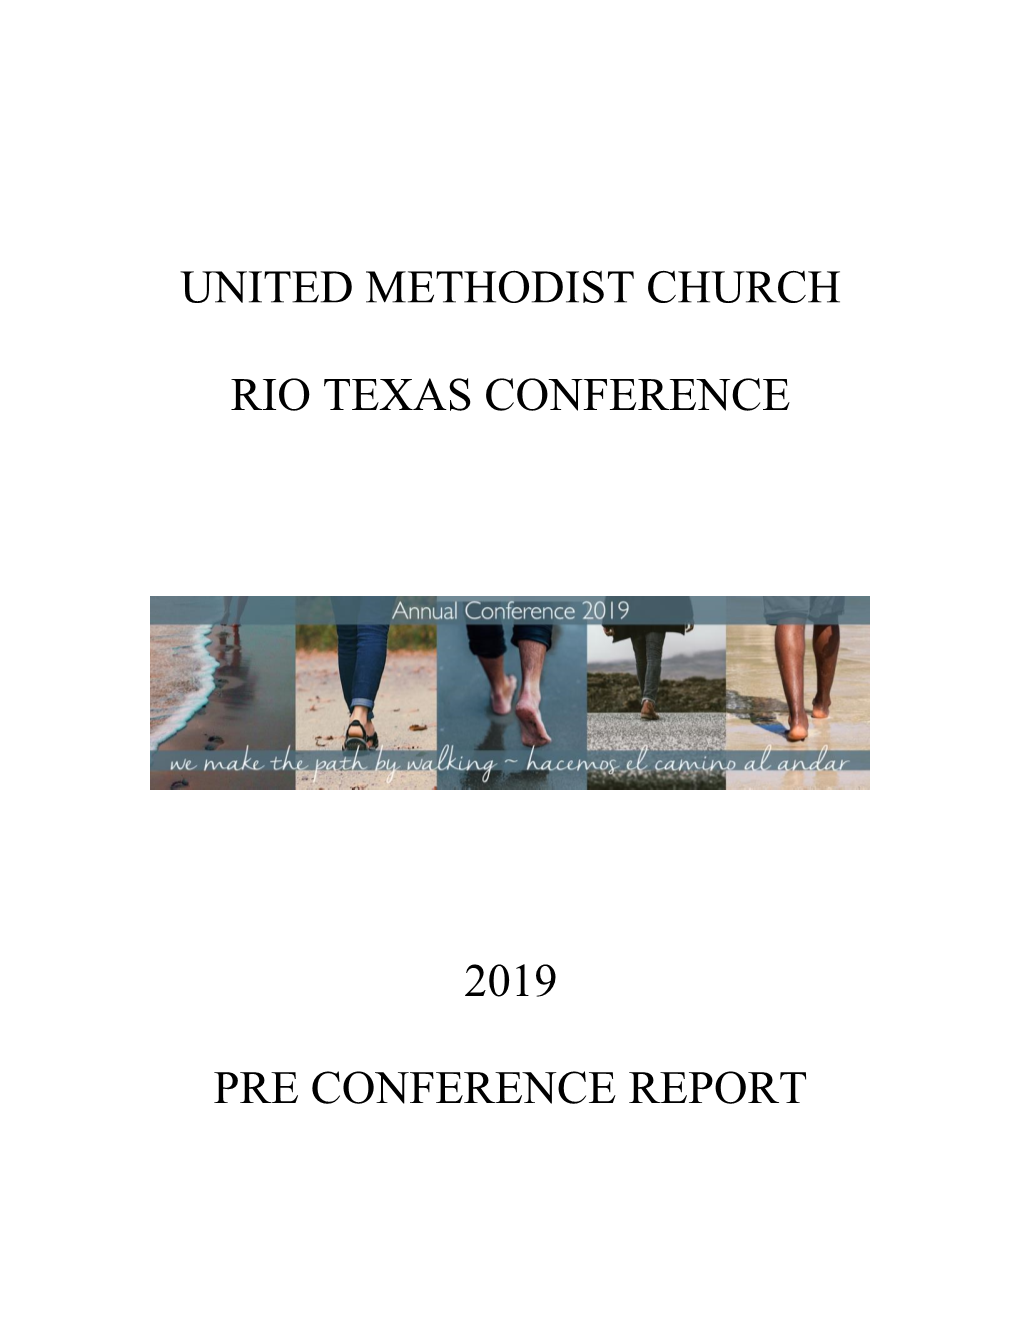 United Methodist Church Rio Texas Conference 2019 Pre